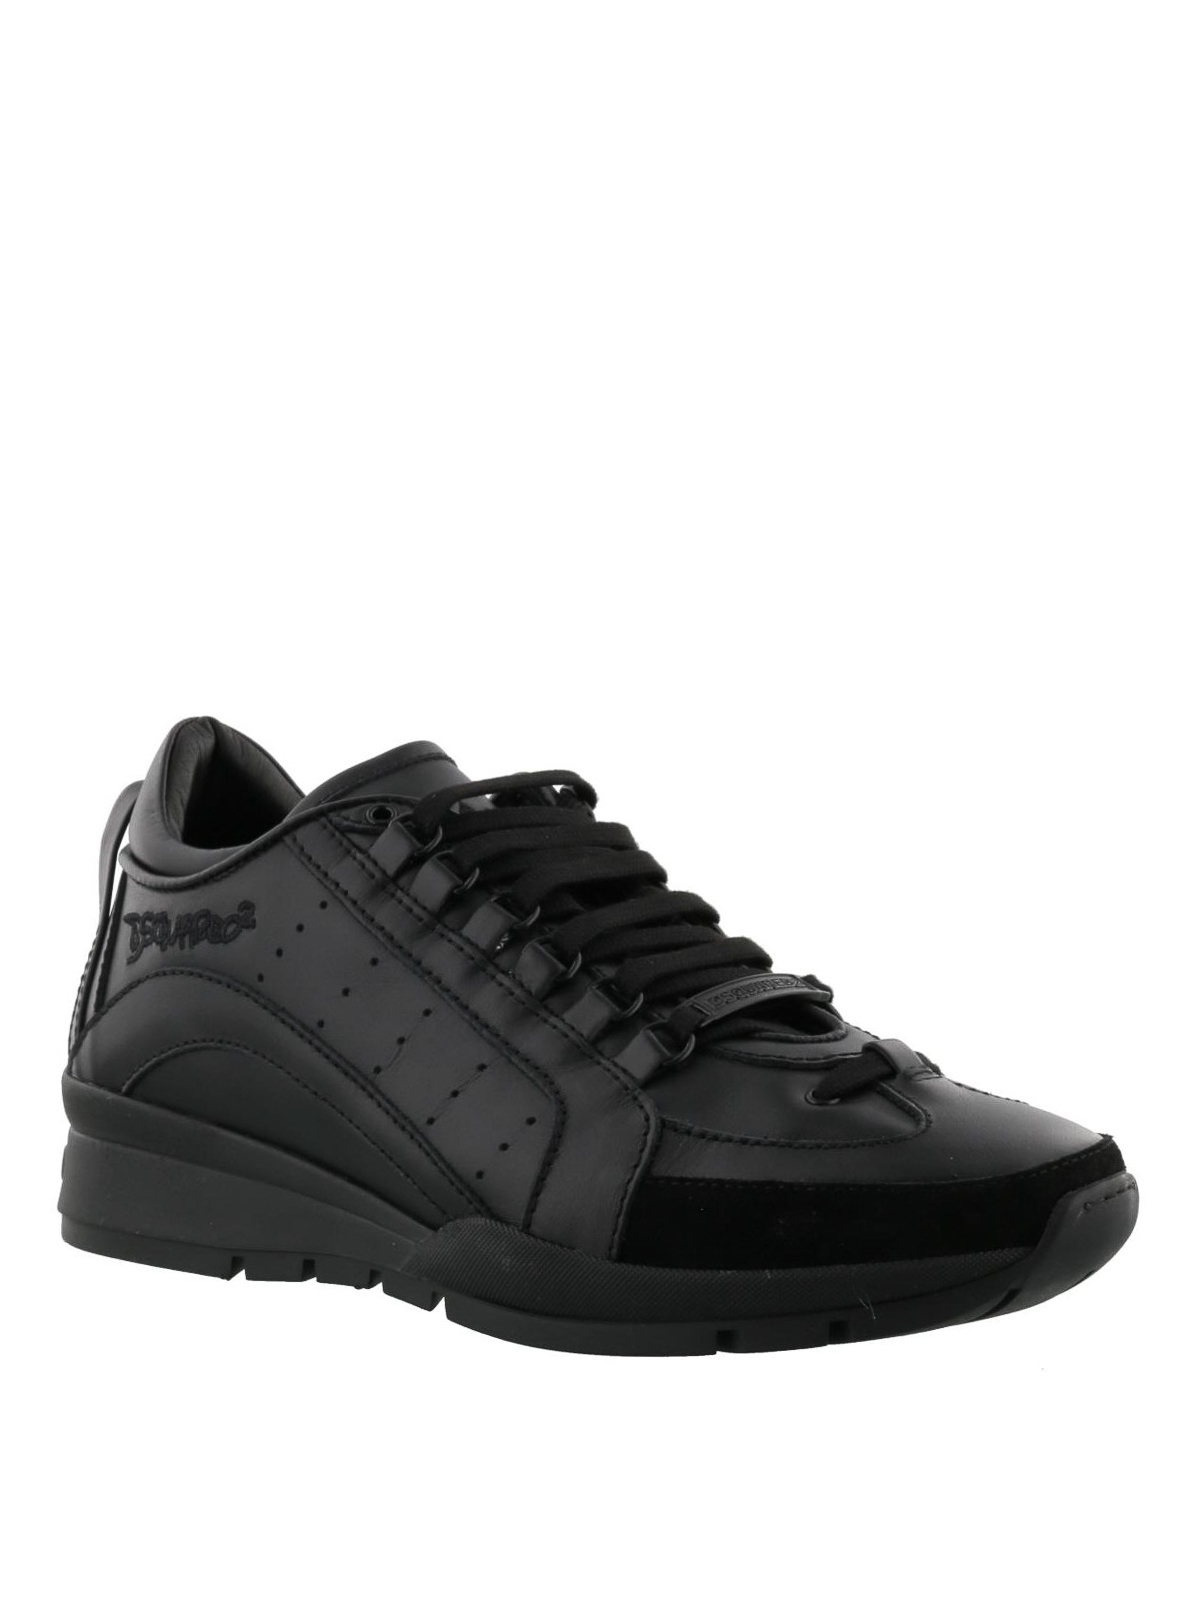 dsquared2 shoes 551 black